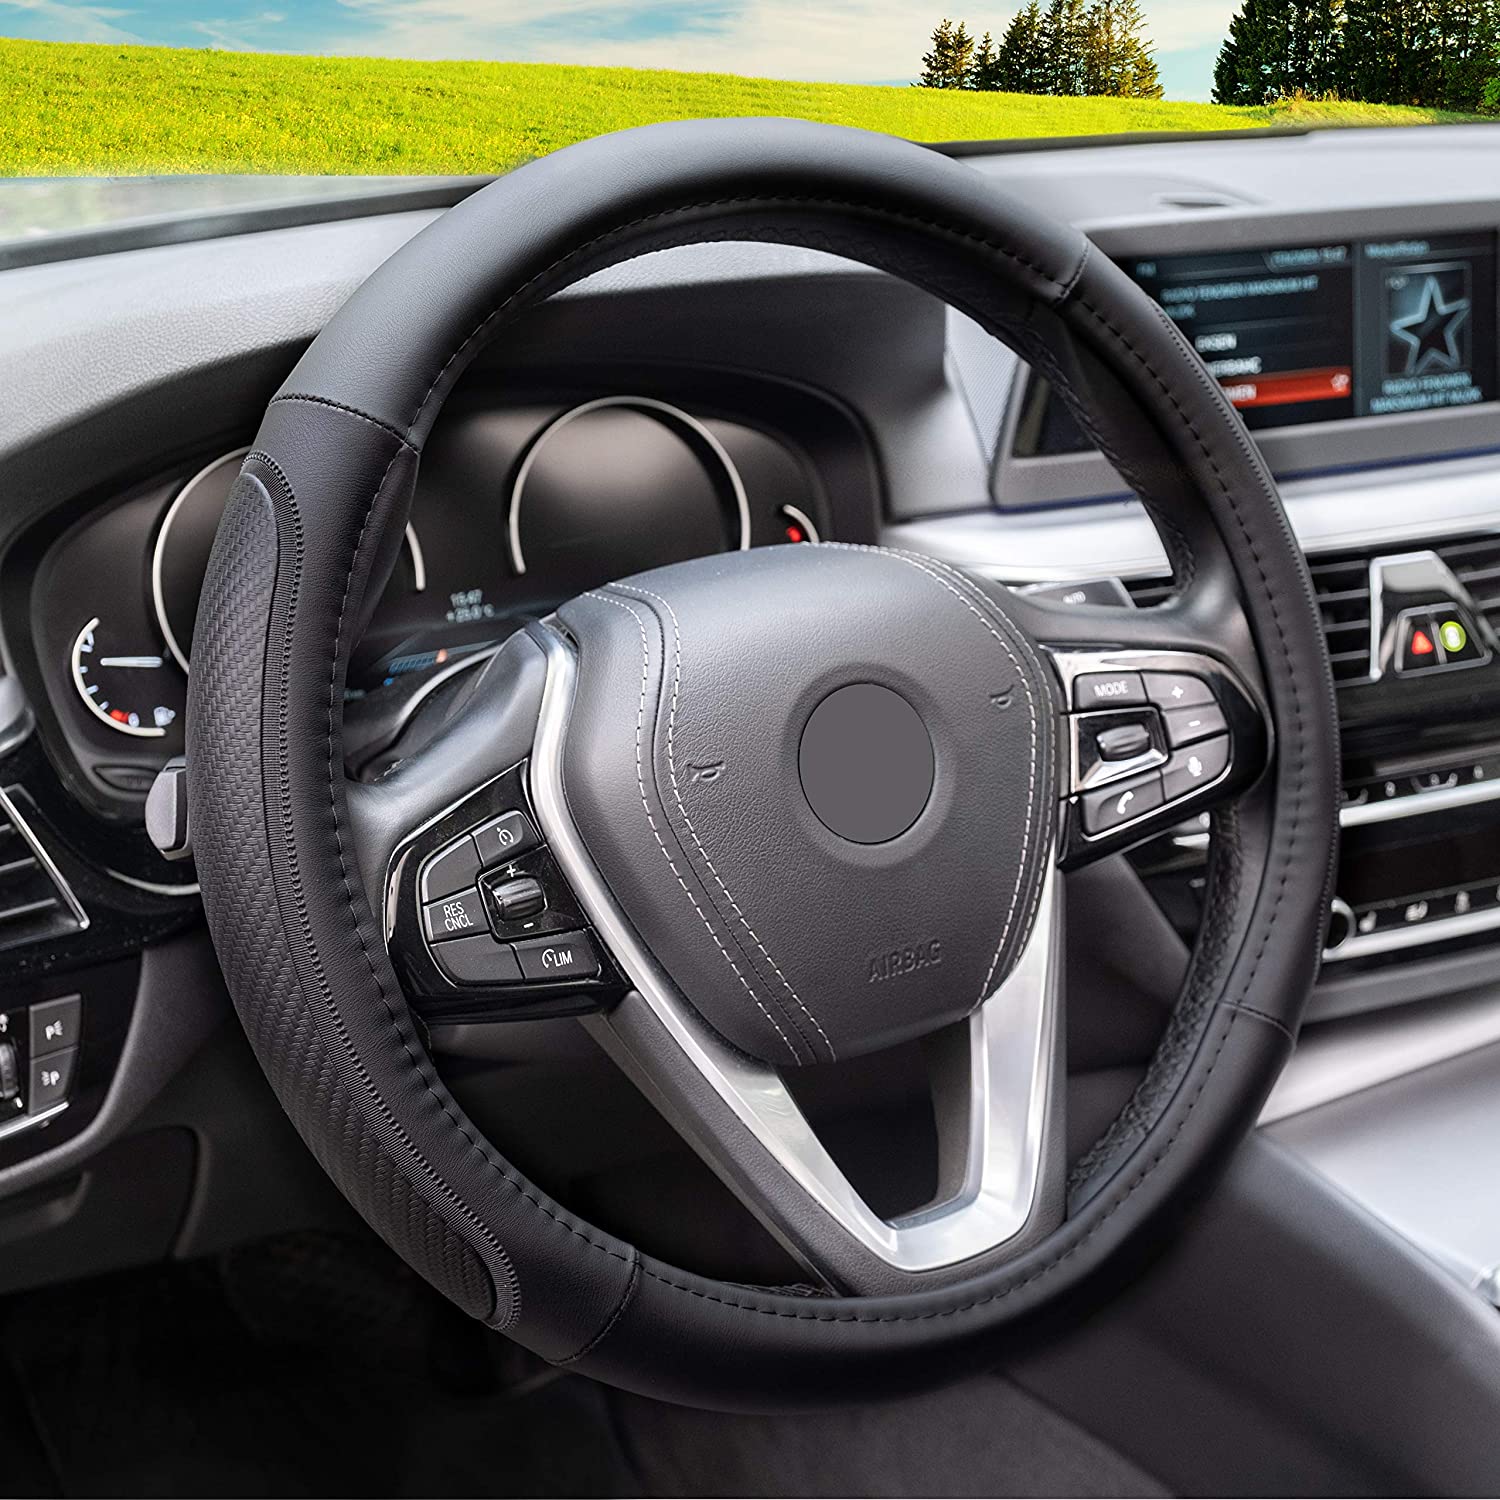 10 Best Steering Wheel Covers For Nissan Sentra Wonderful